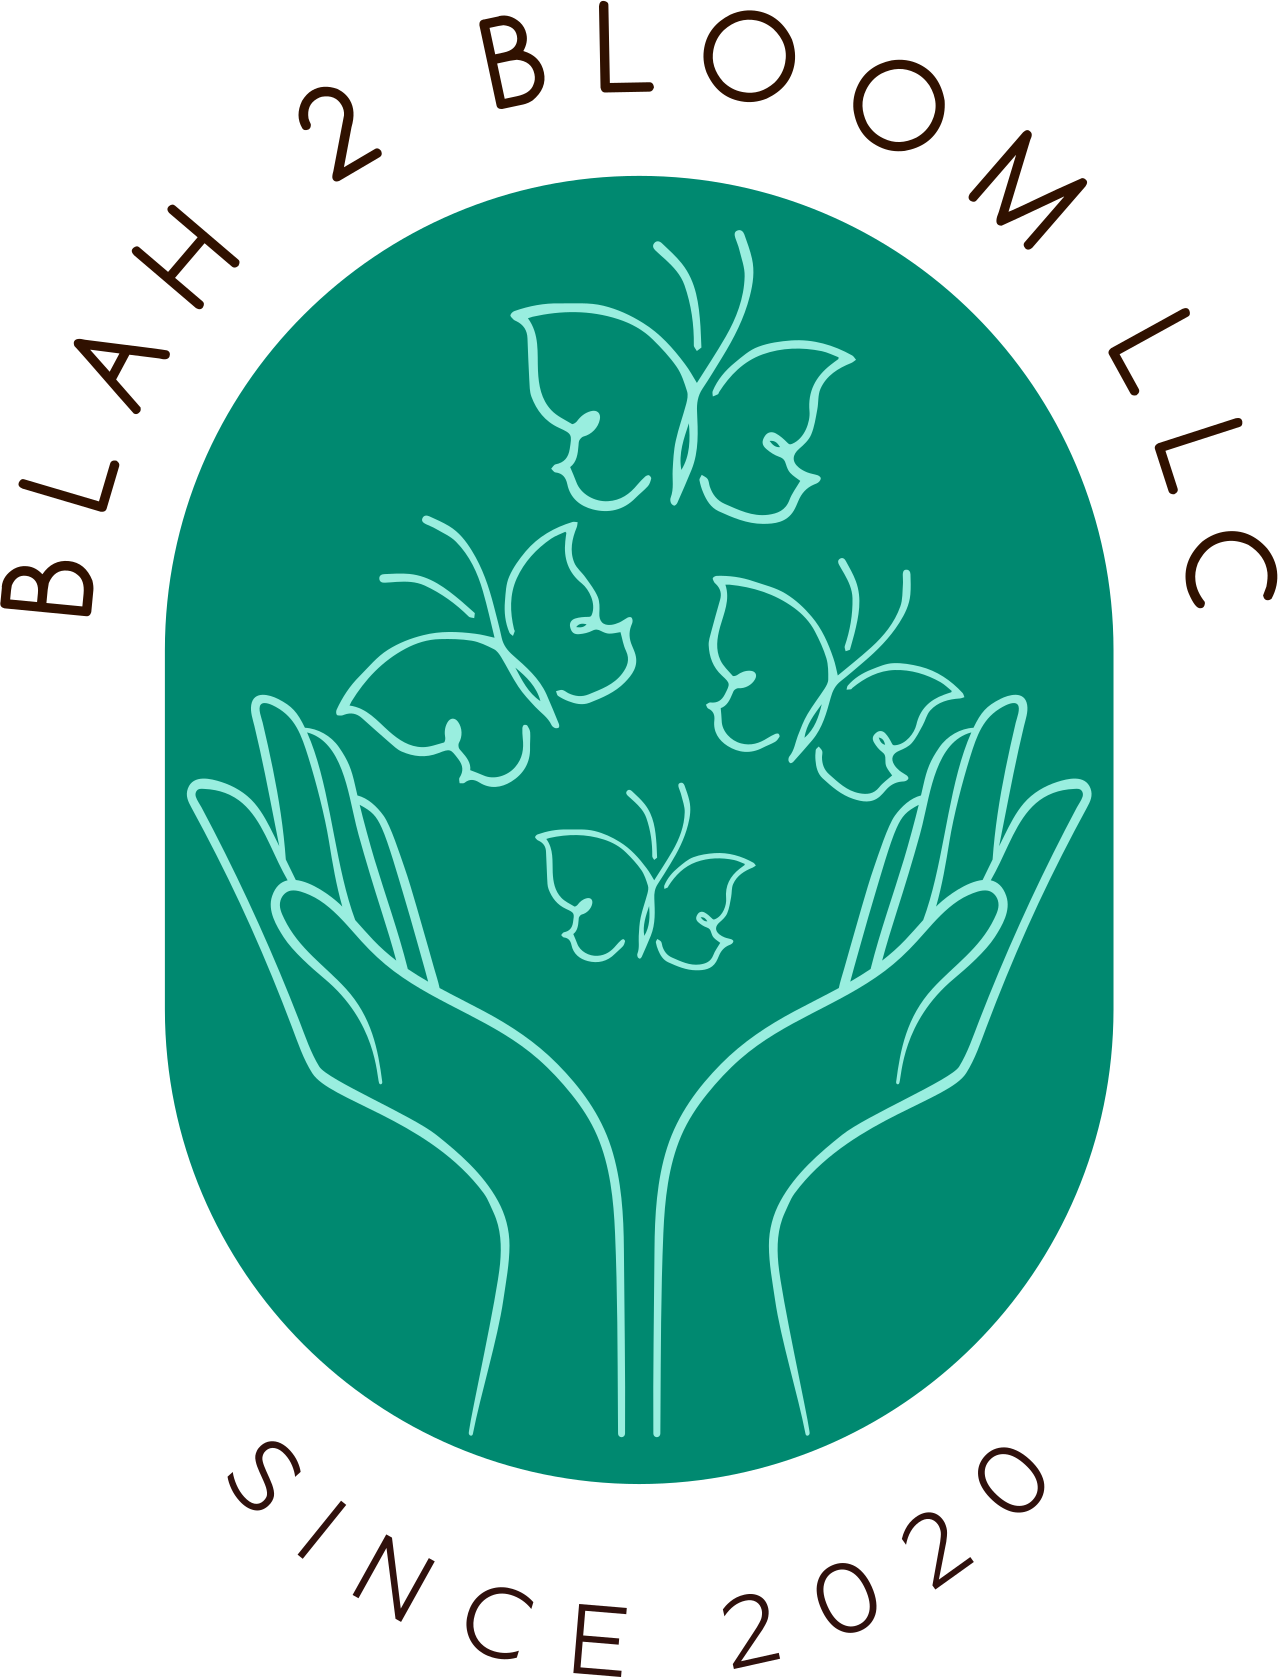 BLAH 2 BLOOM LLC's logo